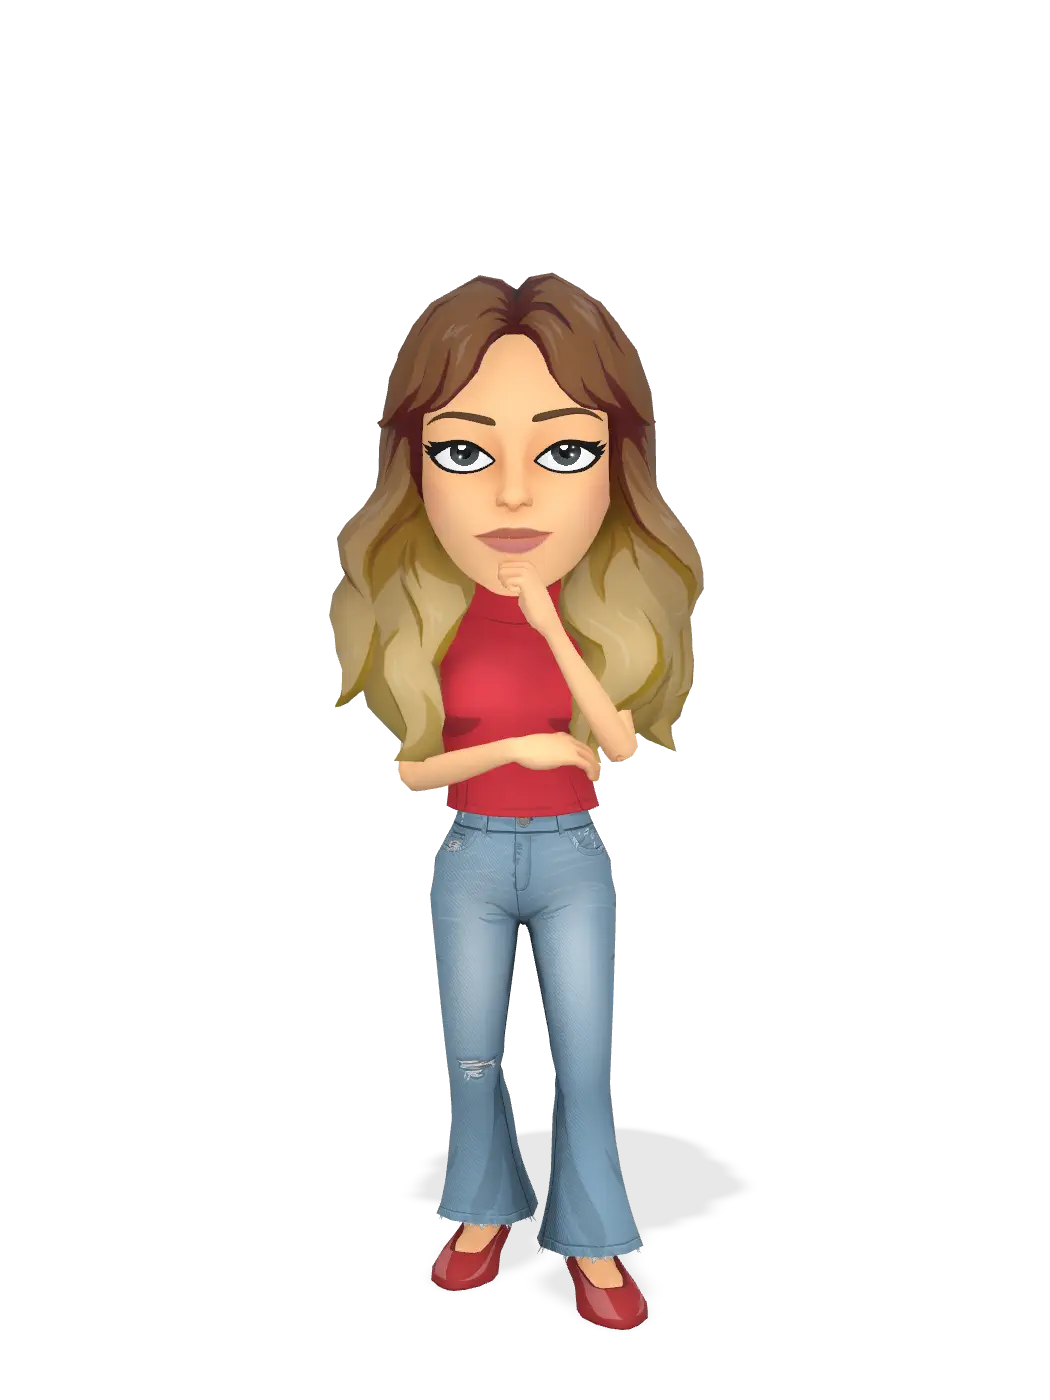 3D Bitmoji for mirankanaan avatar